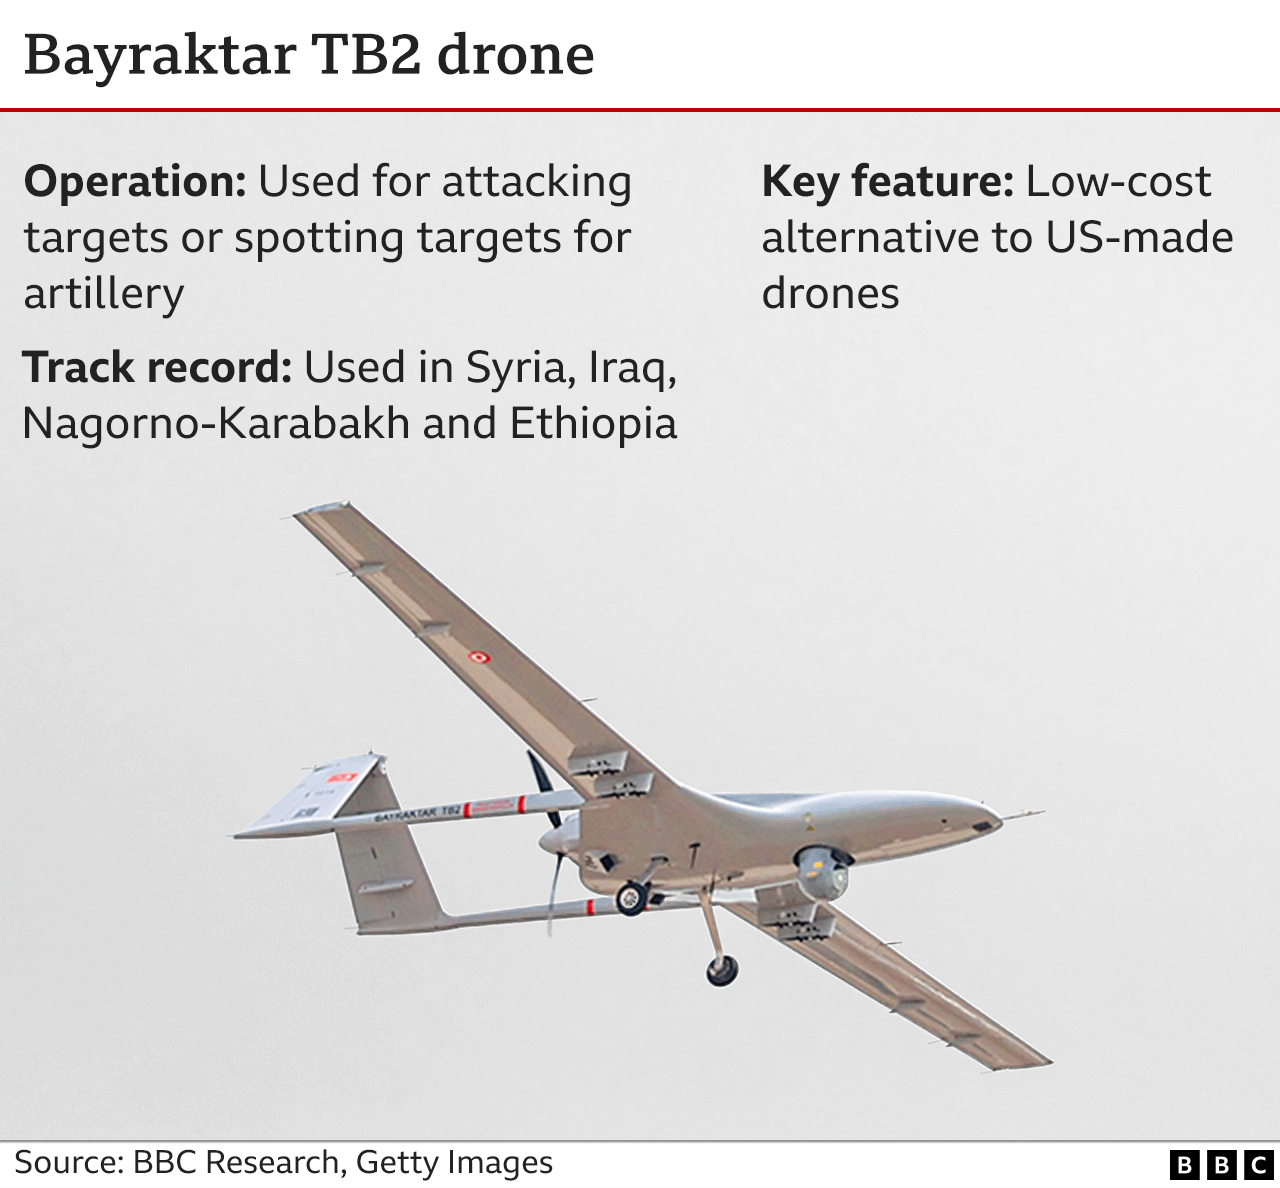 Grafik mit Merkmalen der Bayraktar TB2-Drohne. Die Bayraktar TB2 ist eine kostengünstige Alternative zu Drohnen aus US-amerikanischer Produktion und kann für direkte Angriffe oder zur Koordinierung von Angriffen mit anderen Systemen auf Ziele eingesetzt werden.